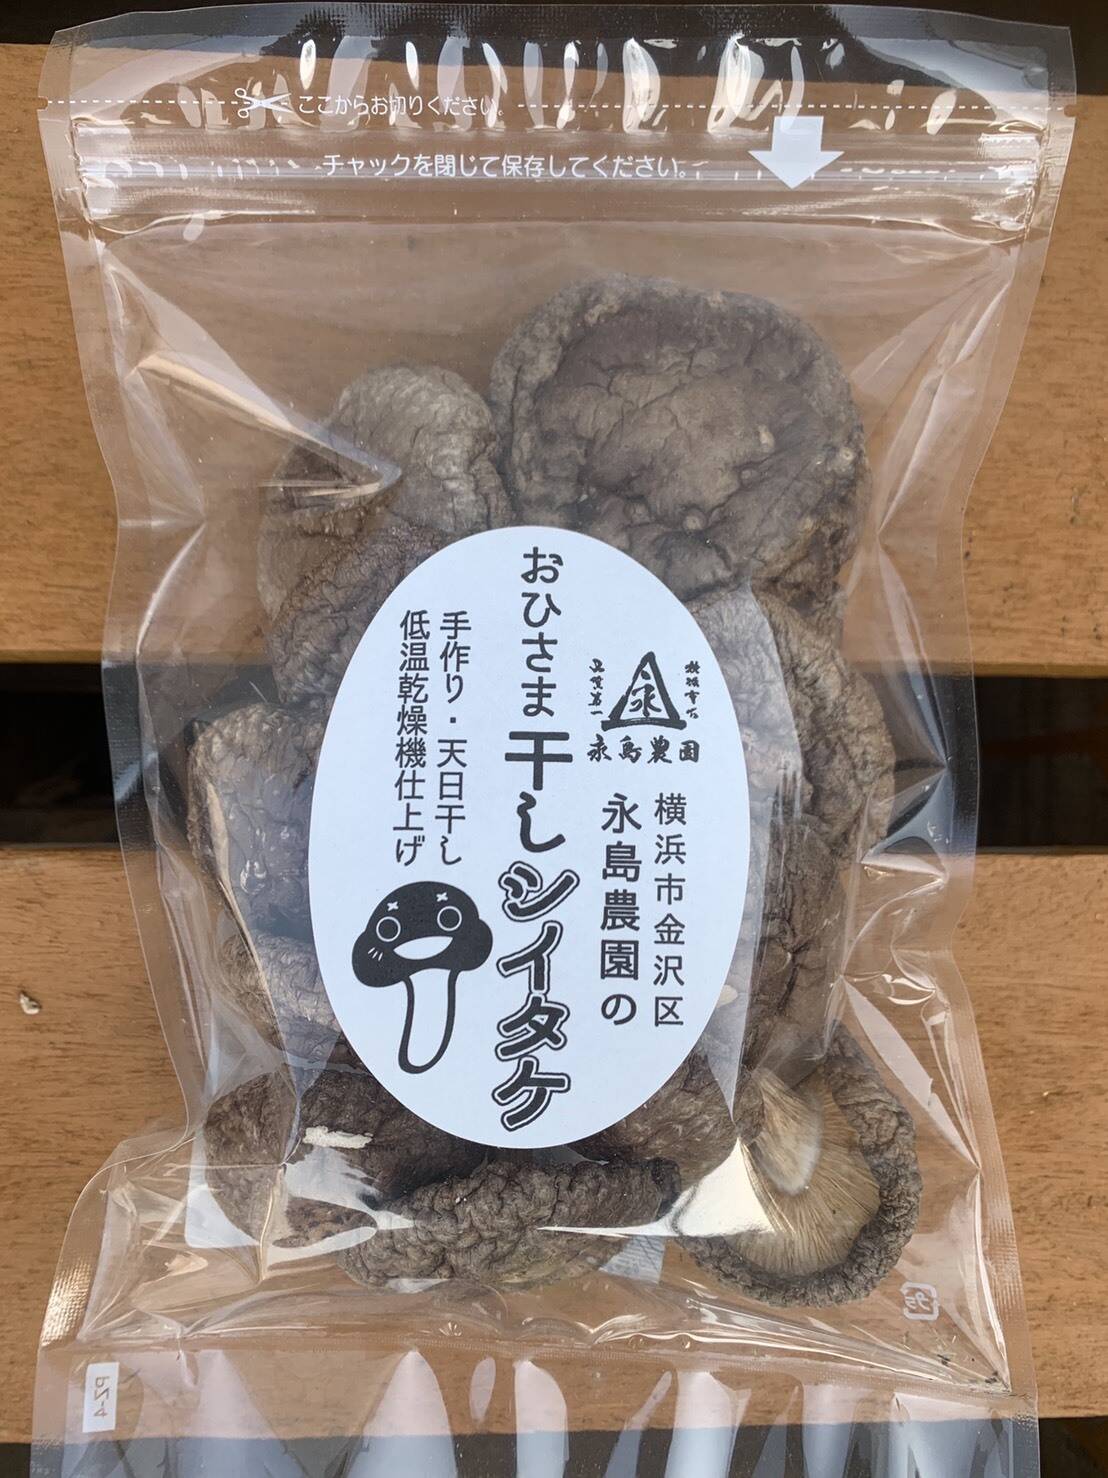 🍴 Eat choku ｜ Plenty of umami!Ohisama Dried Shiitake Mushrooms (50g bag) No chemical pesticides or fertilizers used …